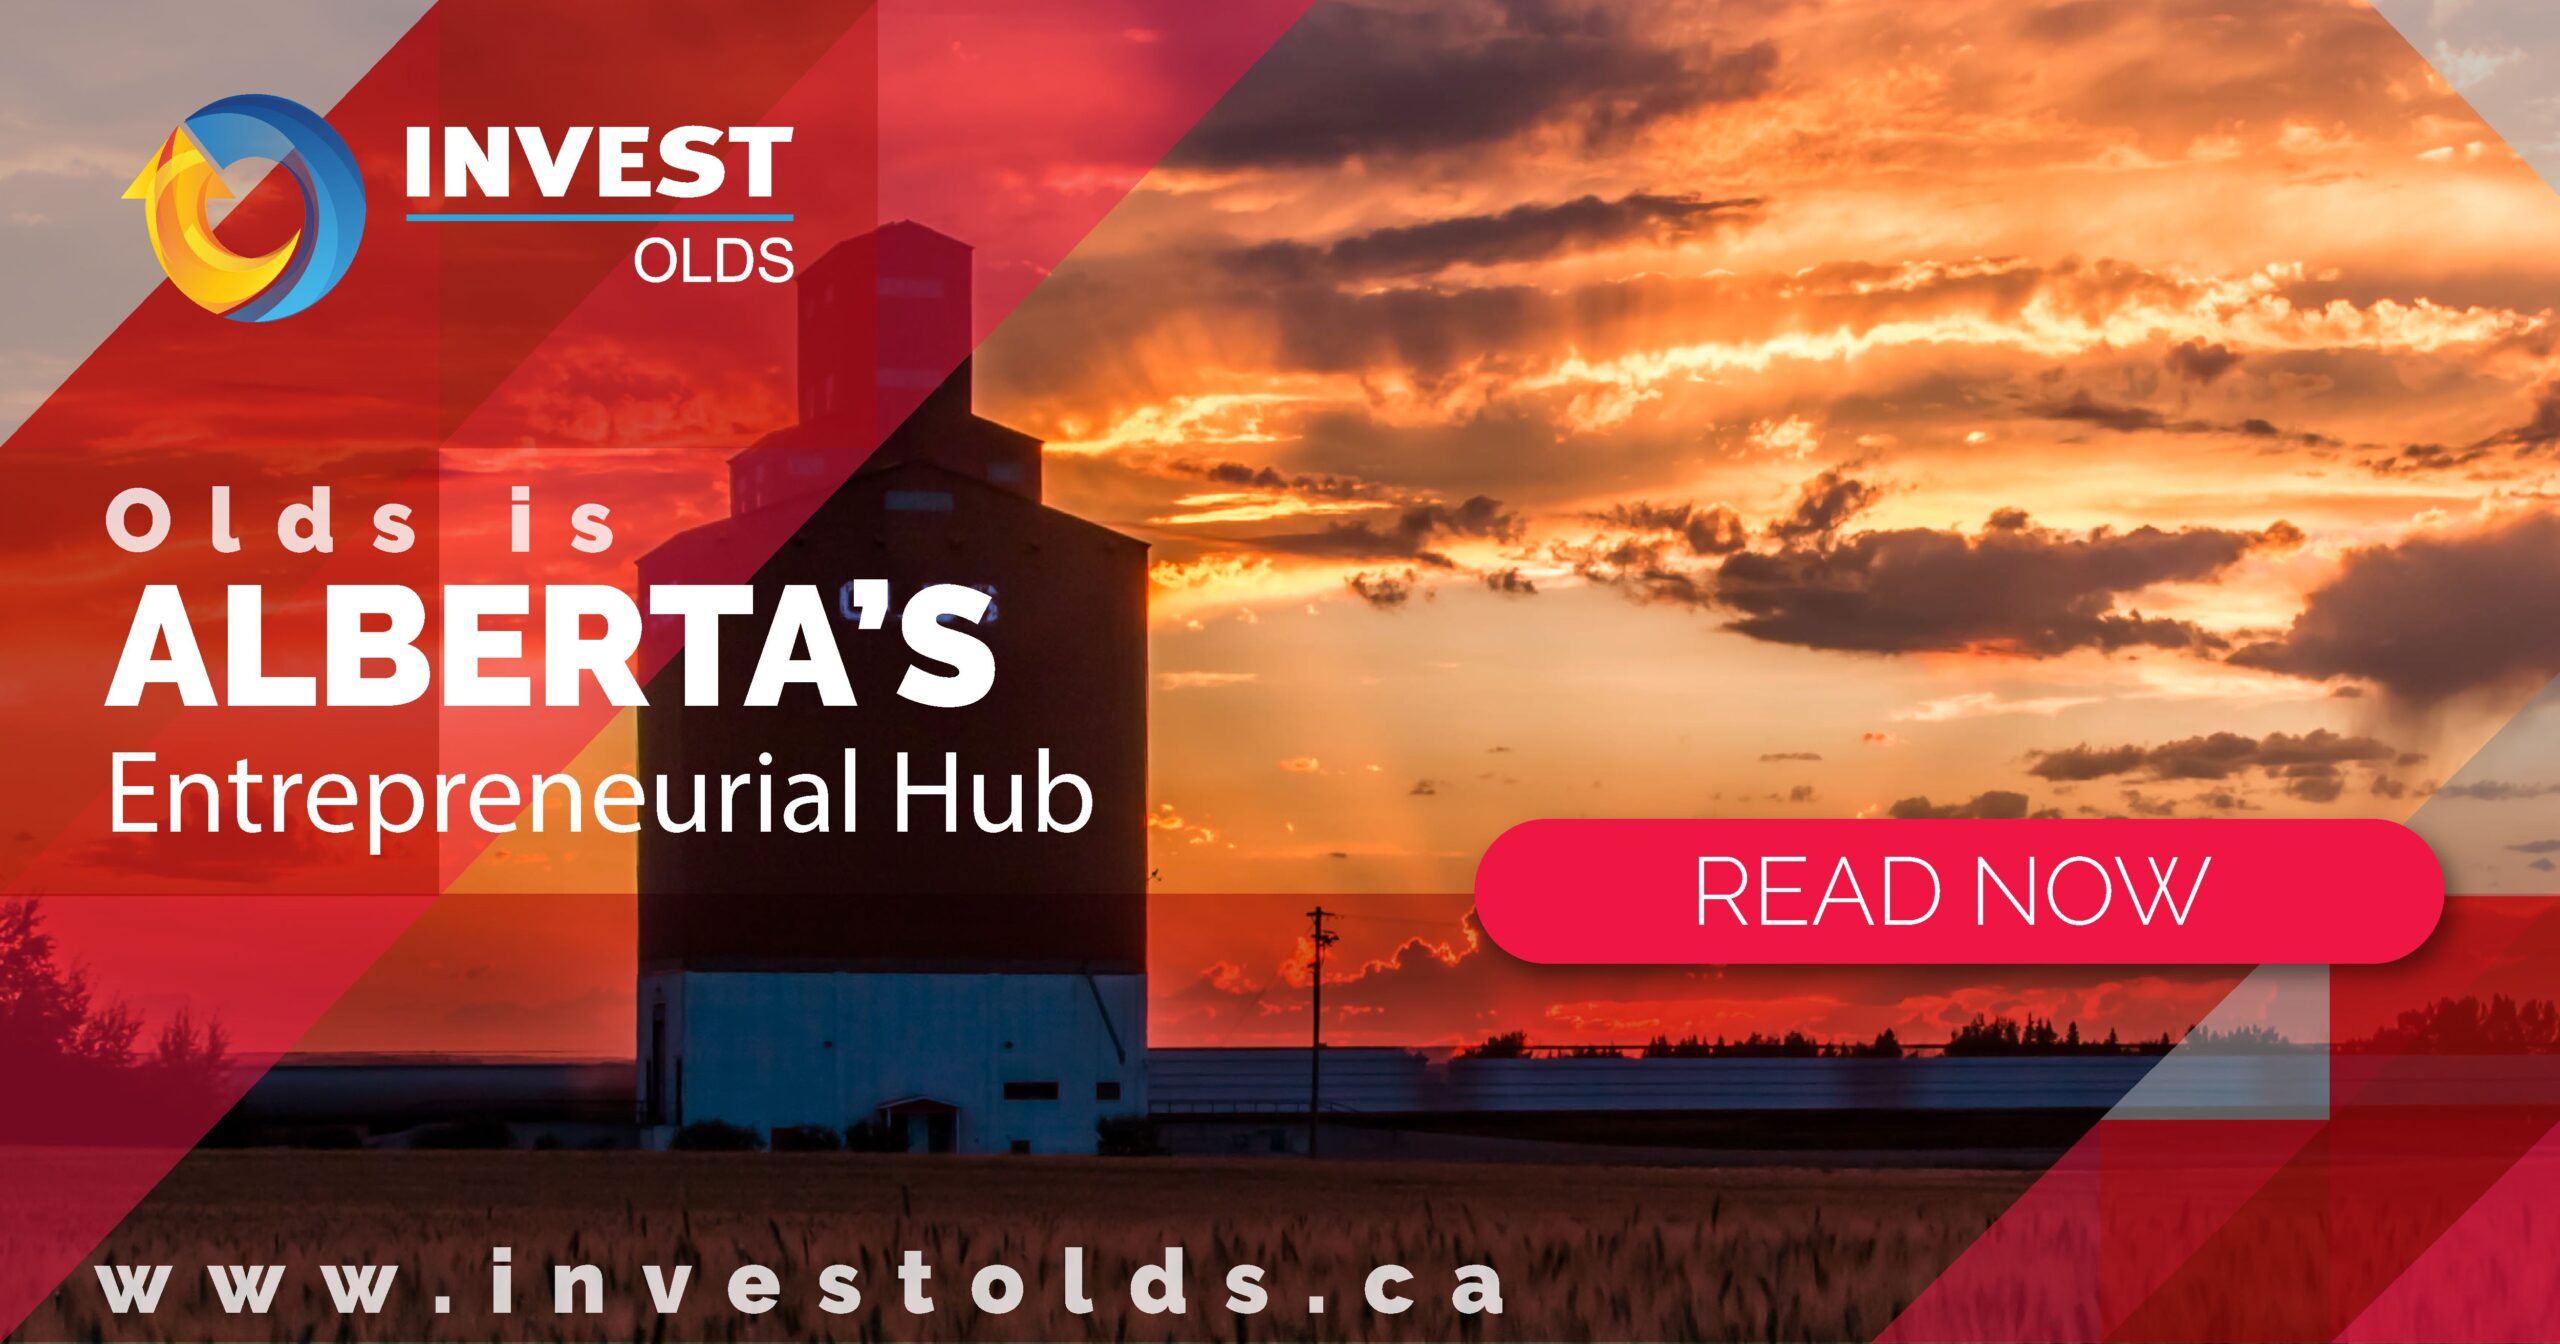 Olds is Alberta's Entrepreneurial Hub